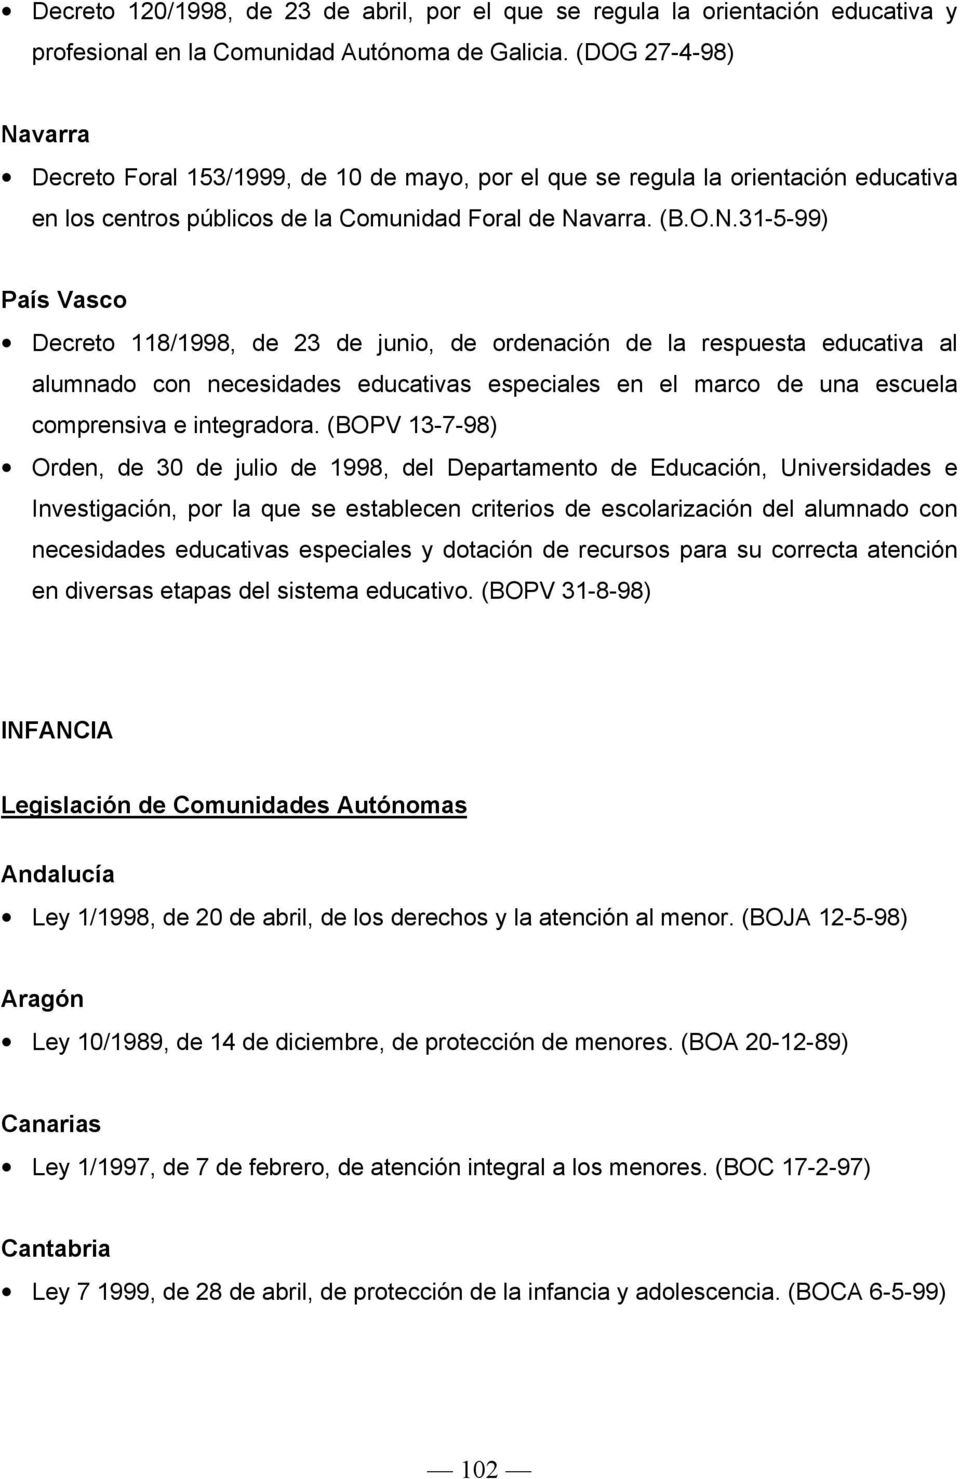 varra Decreto Foral 153/1999, de 10 de mayo, por el que se regula la orientación educativa en los centros públicos de la Comunidad Foral de Na